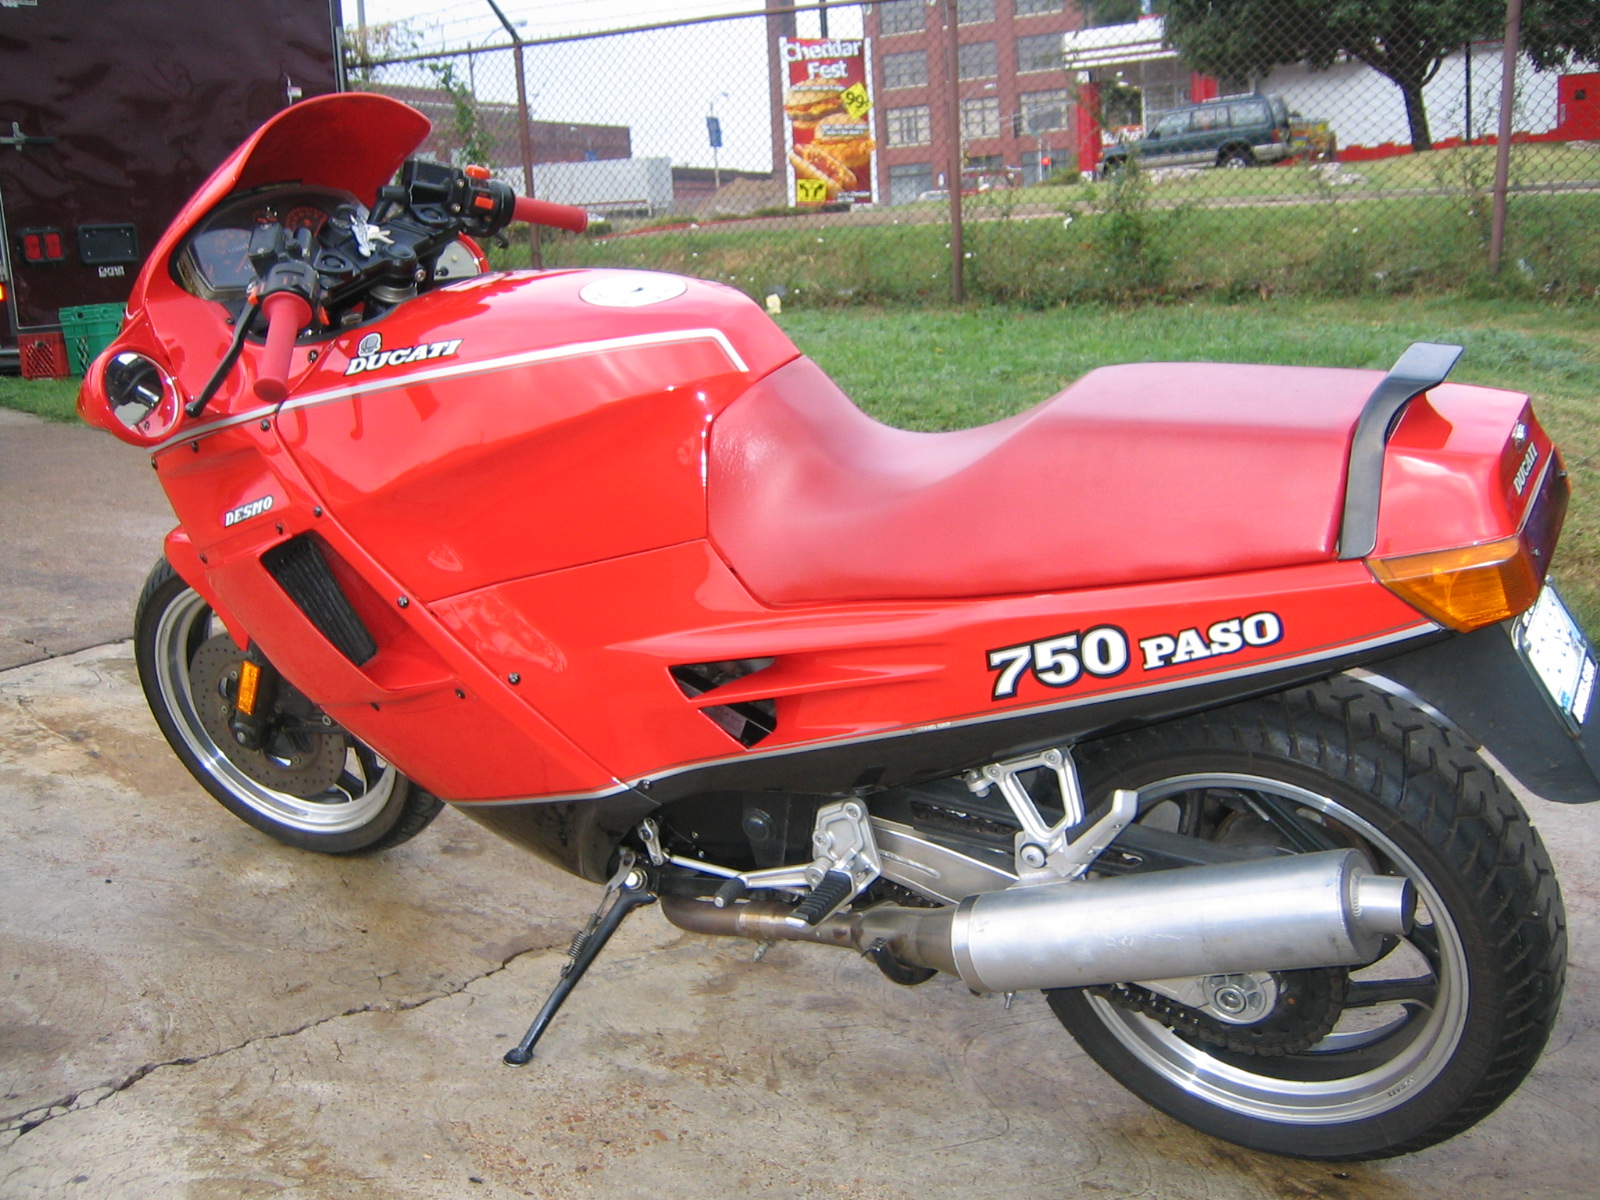 1988 Ducati 750 Paso #8